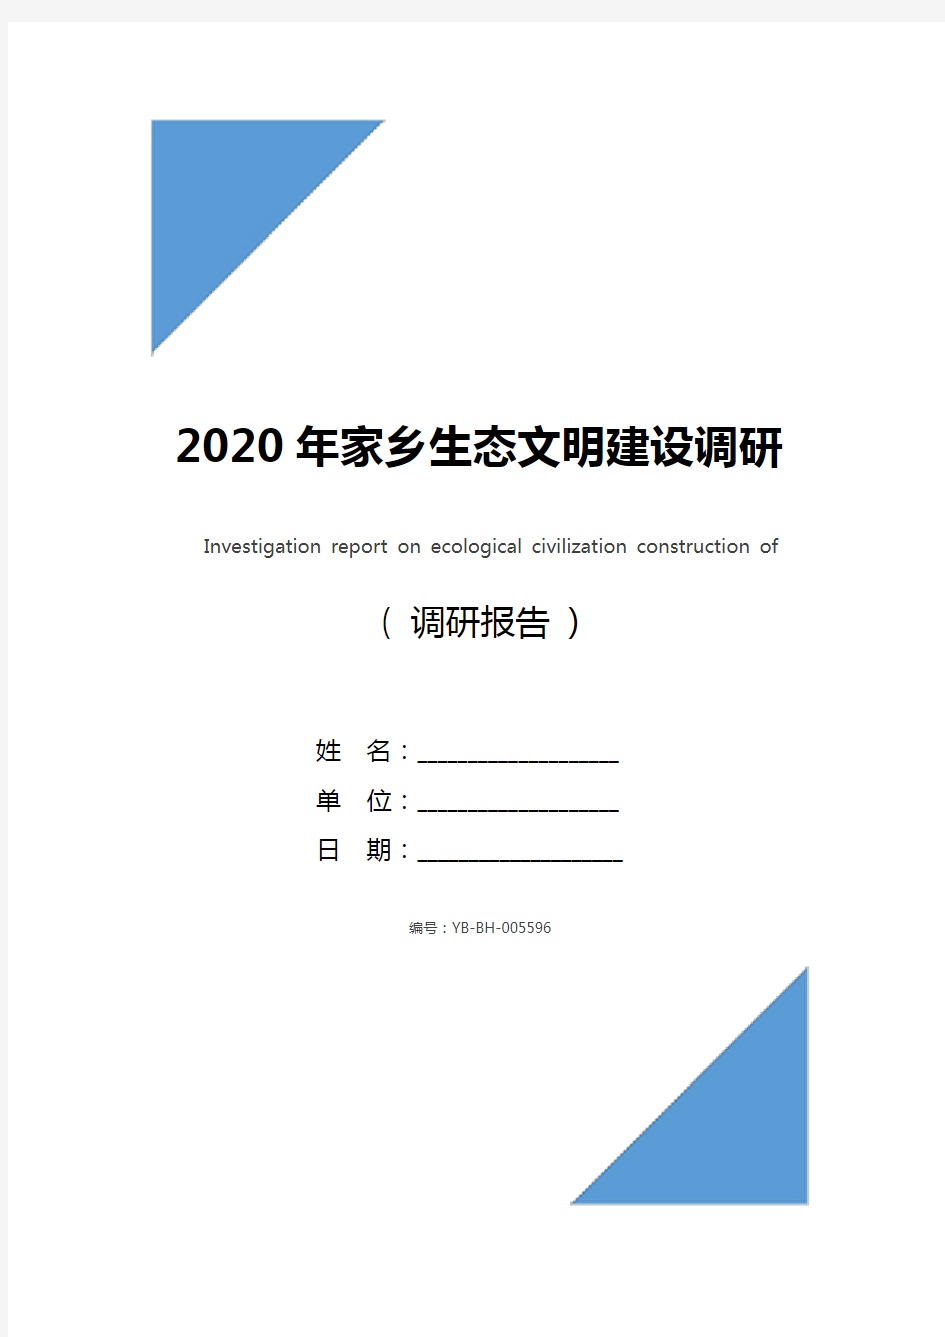 2020年家乡生态文明建设调研报告_1